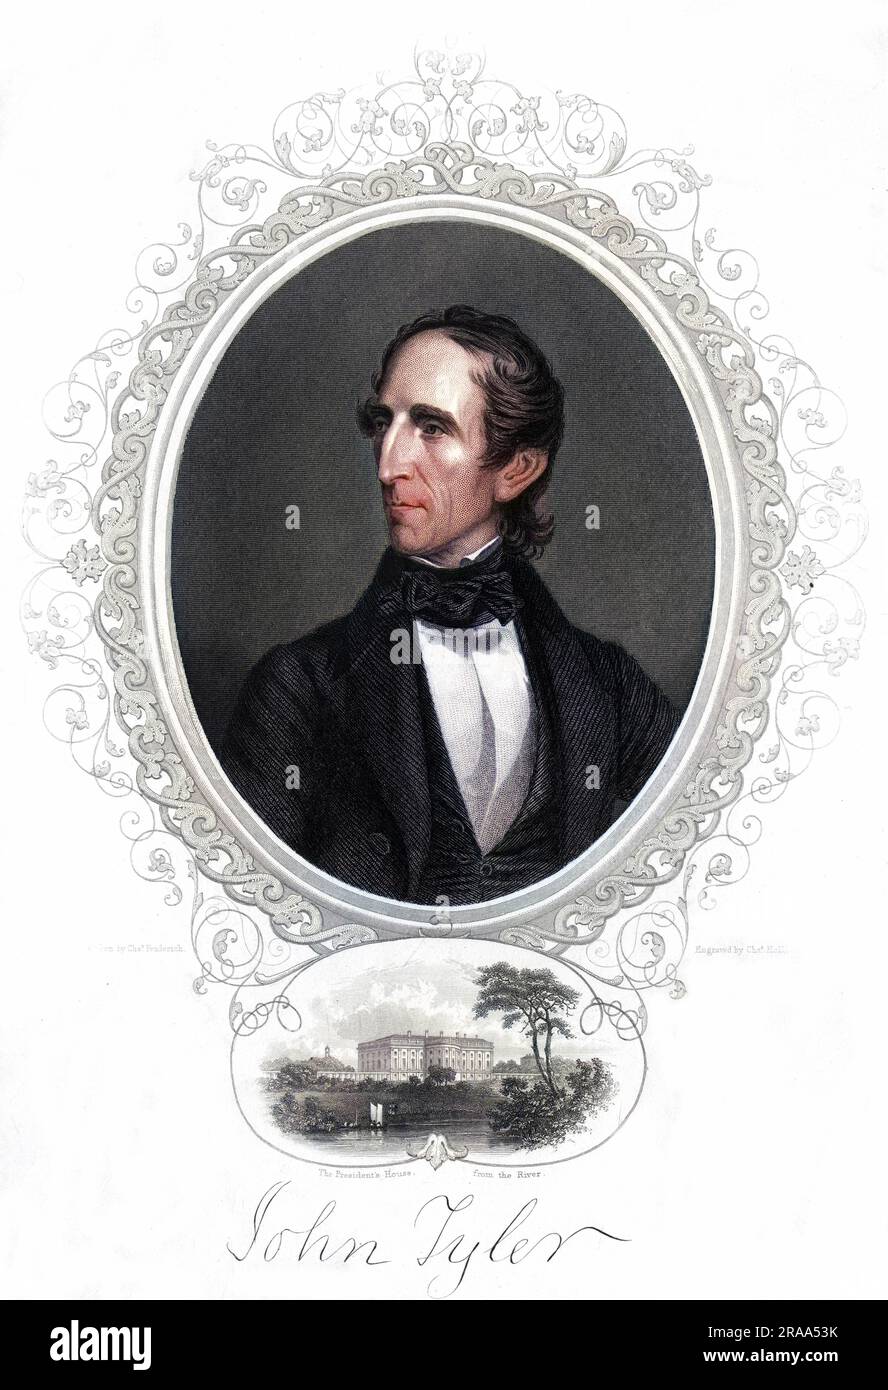 JOHN TYLER Président des États-Unis Date: 1790 - 1862 Banque D'Images